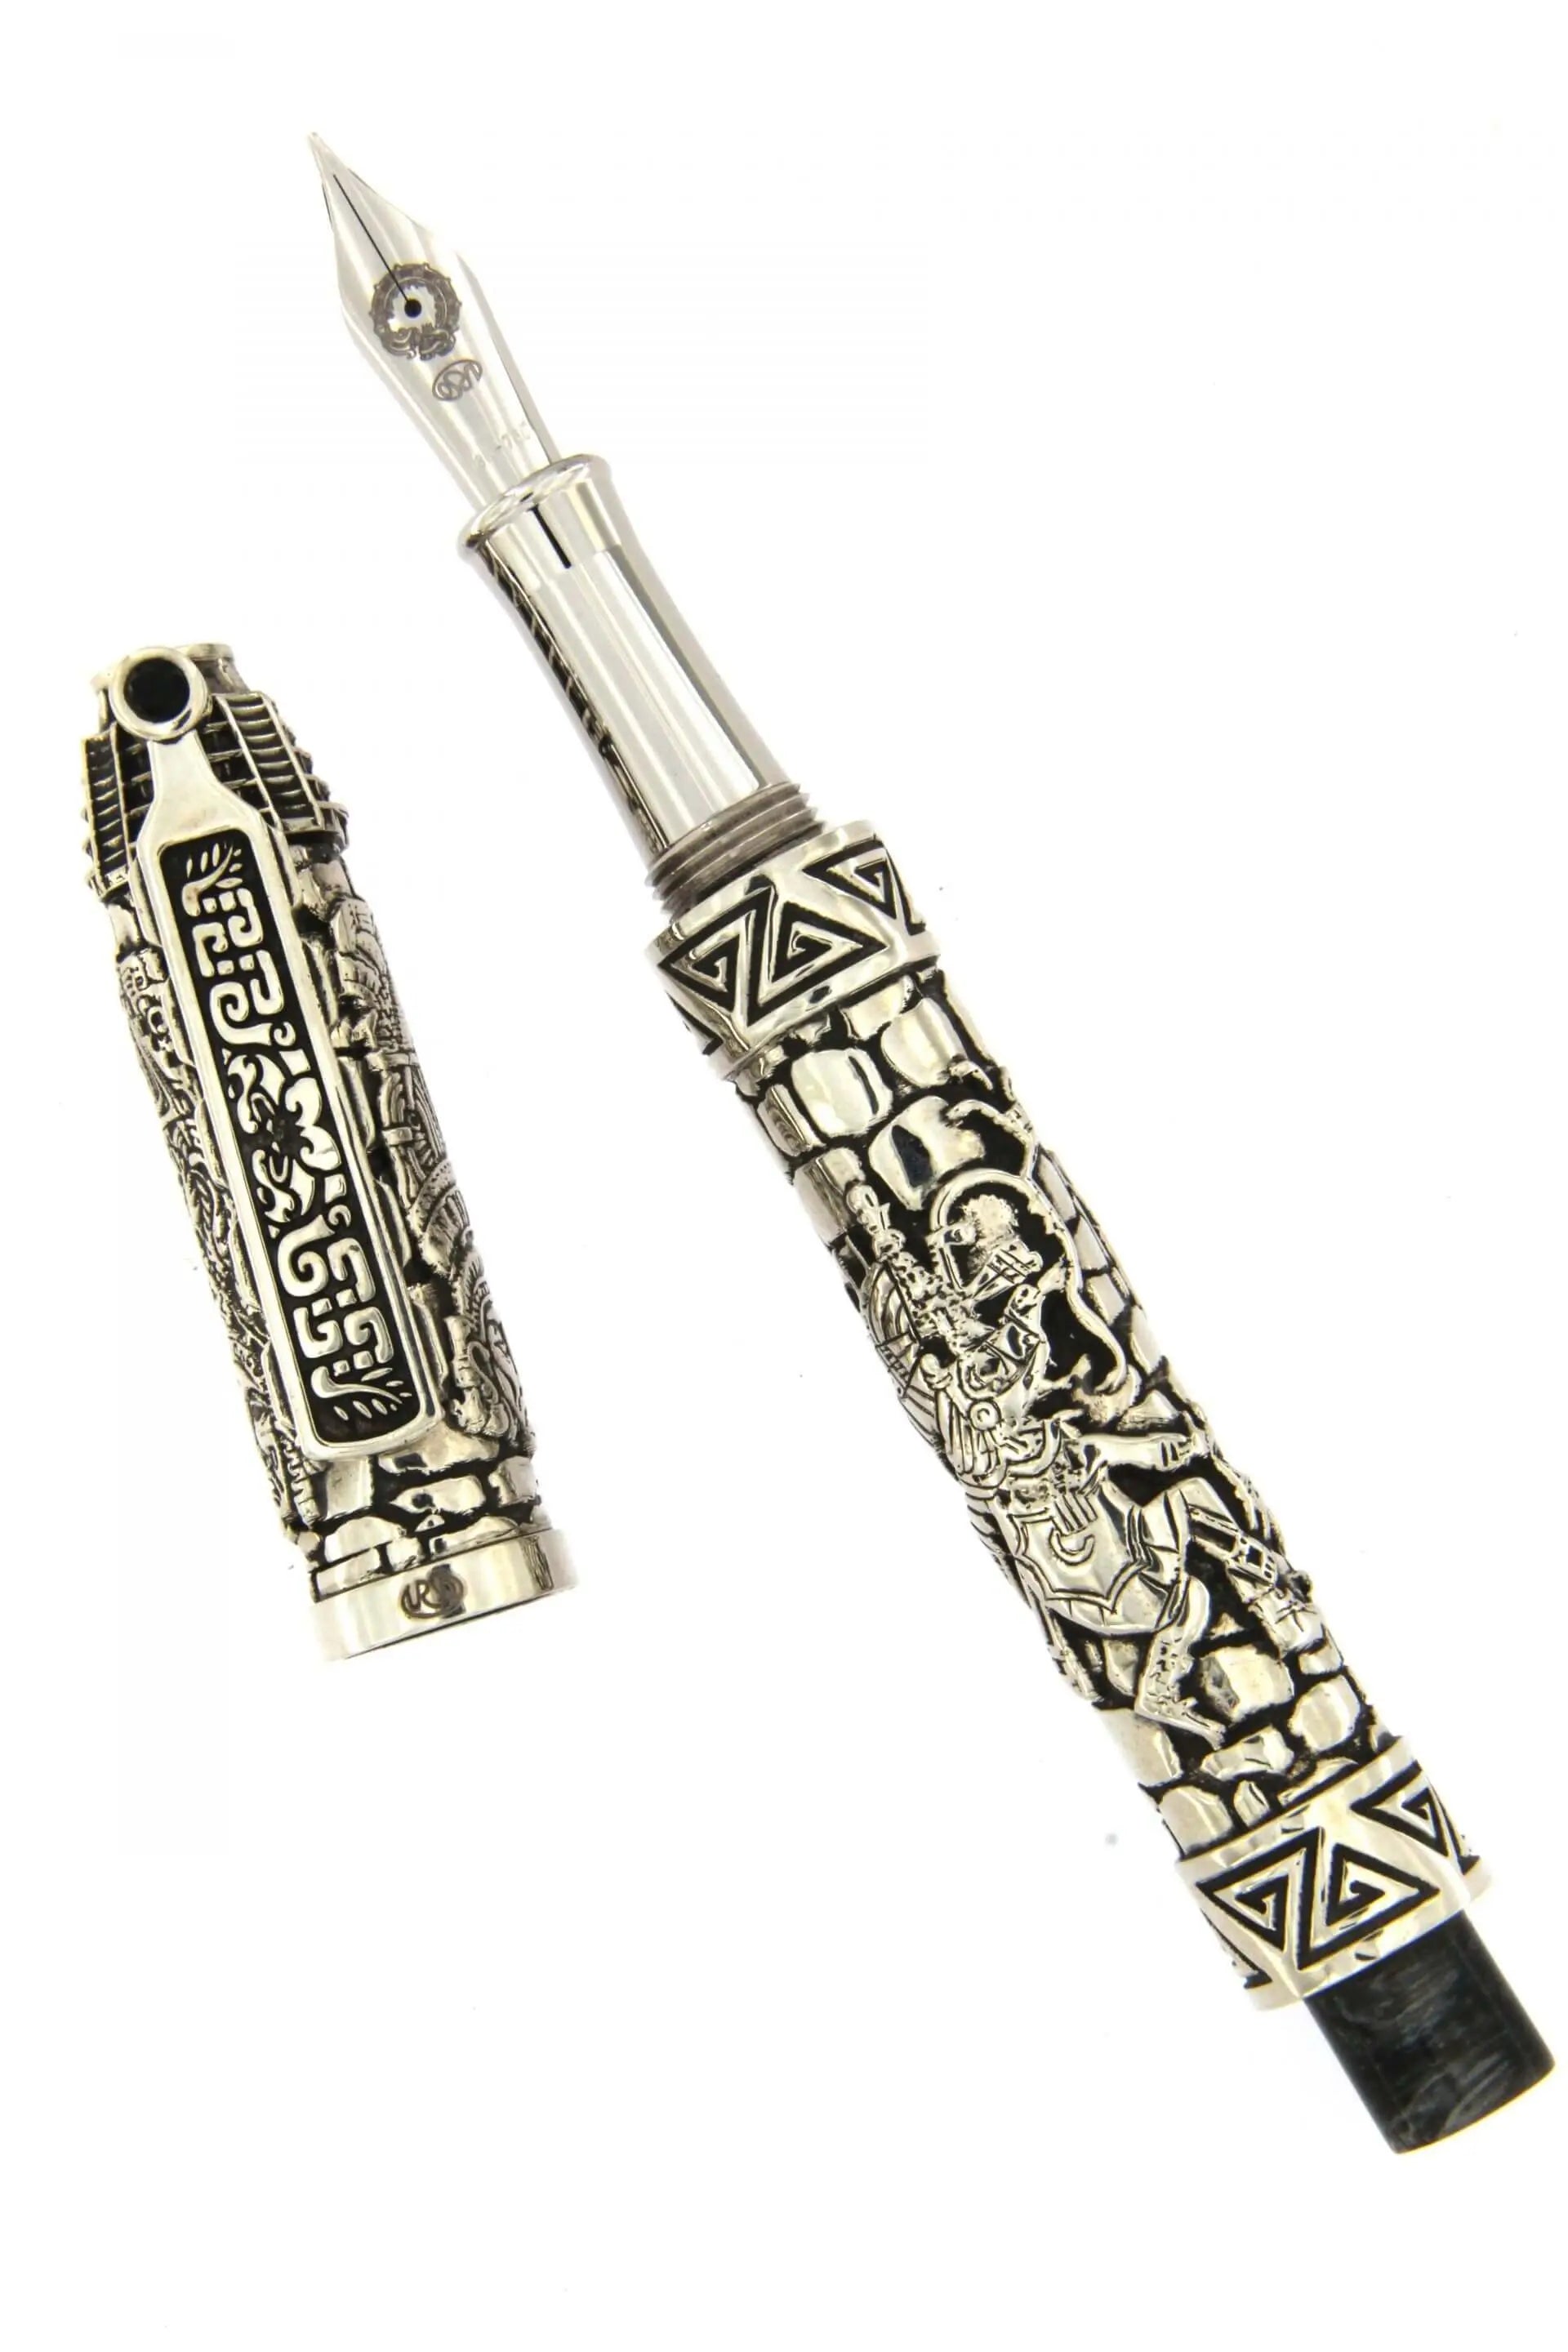 Quetzalcoatl Fountain Pen Silver